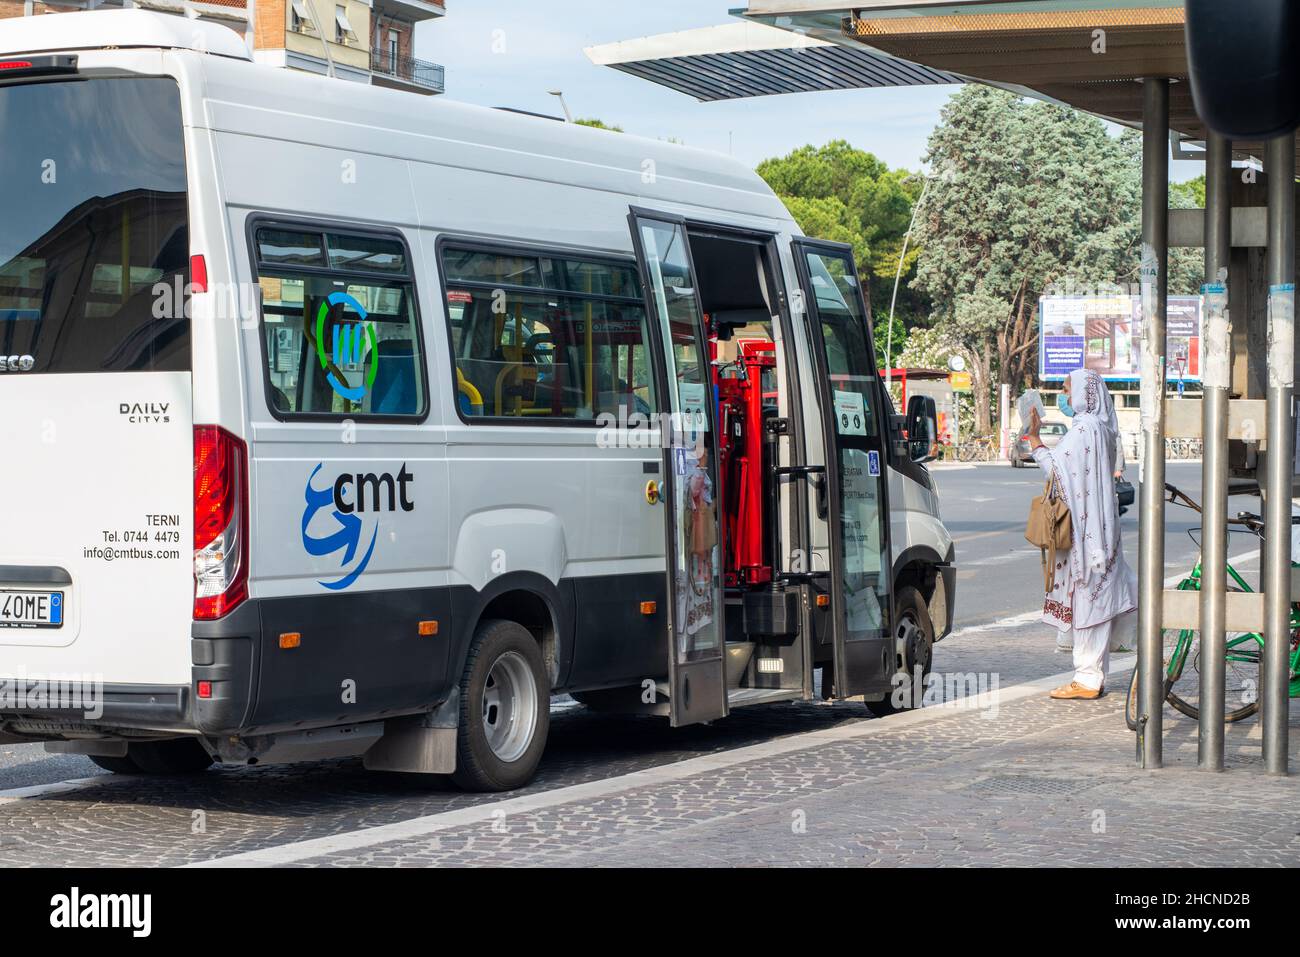 terni, italien Mai 29 2020:Bus einer lokalen Genossenschaft und ausländische Frau, die um Informationen mit Maske für covid Notfall bittet Stockfoto